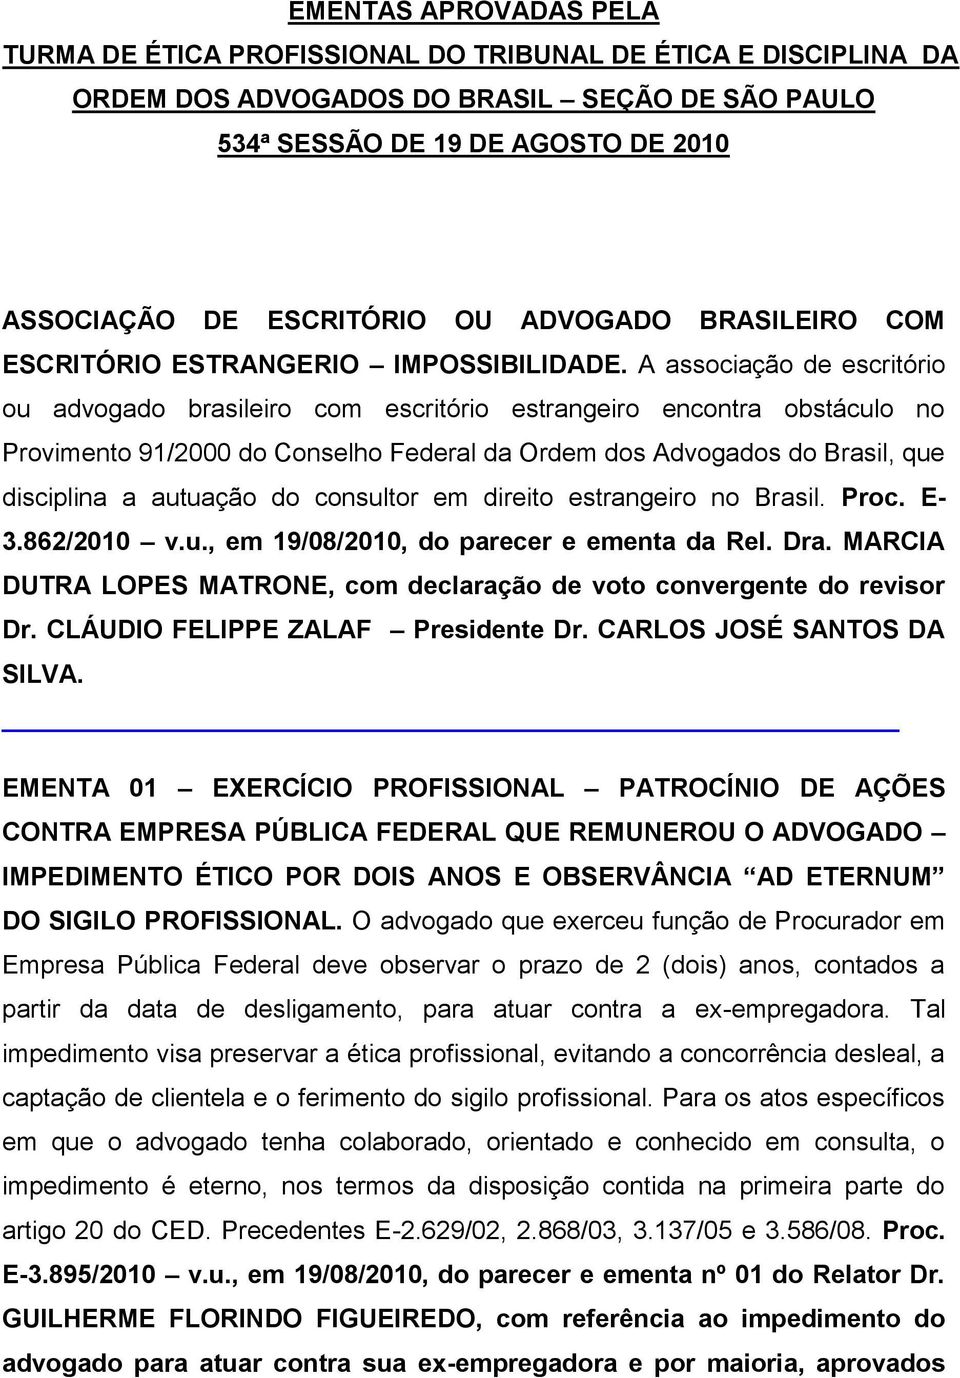 A associação de escritório ou advogado brasileiro com escritório estrangeiro encontra obstáculo no Provimento 91/2000 do Conselho Federal da Ordem dos Advogados do Brasil, que disciplina a autuação